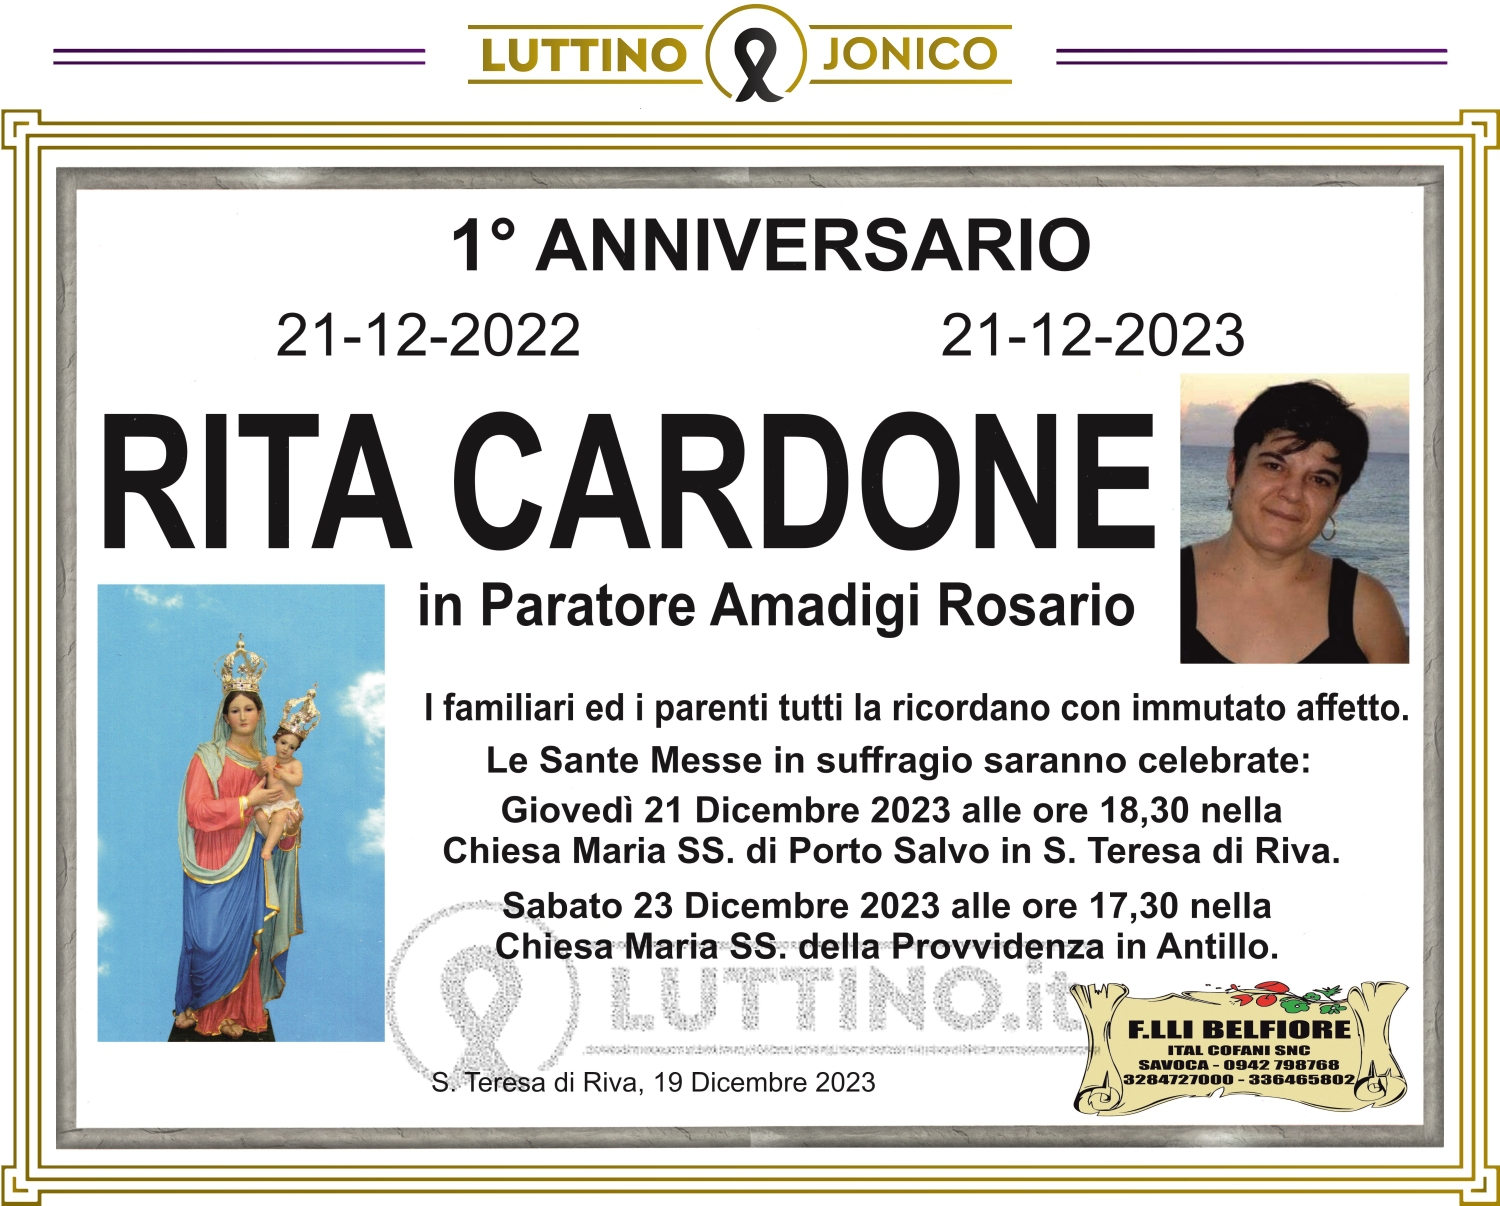 Rita Cardone